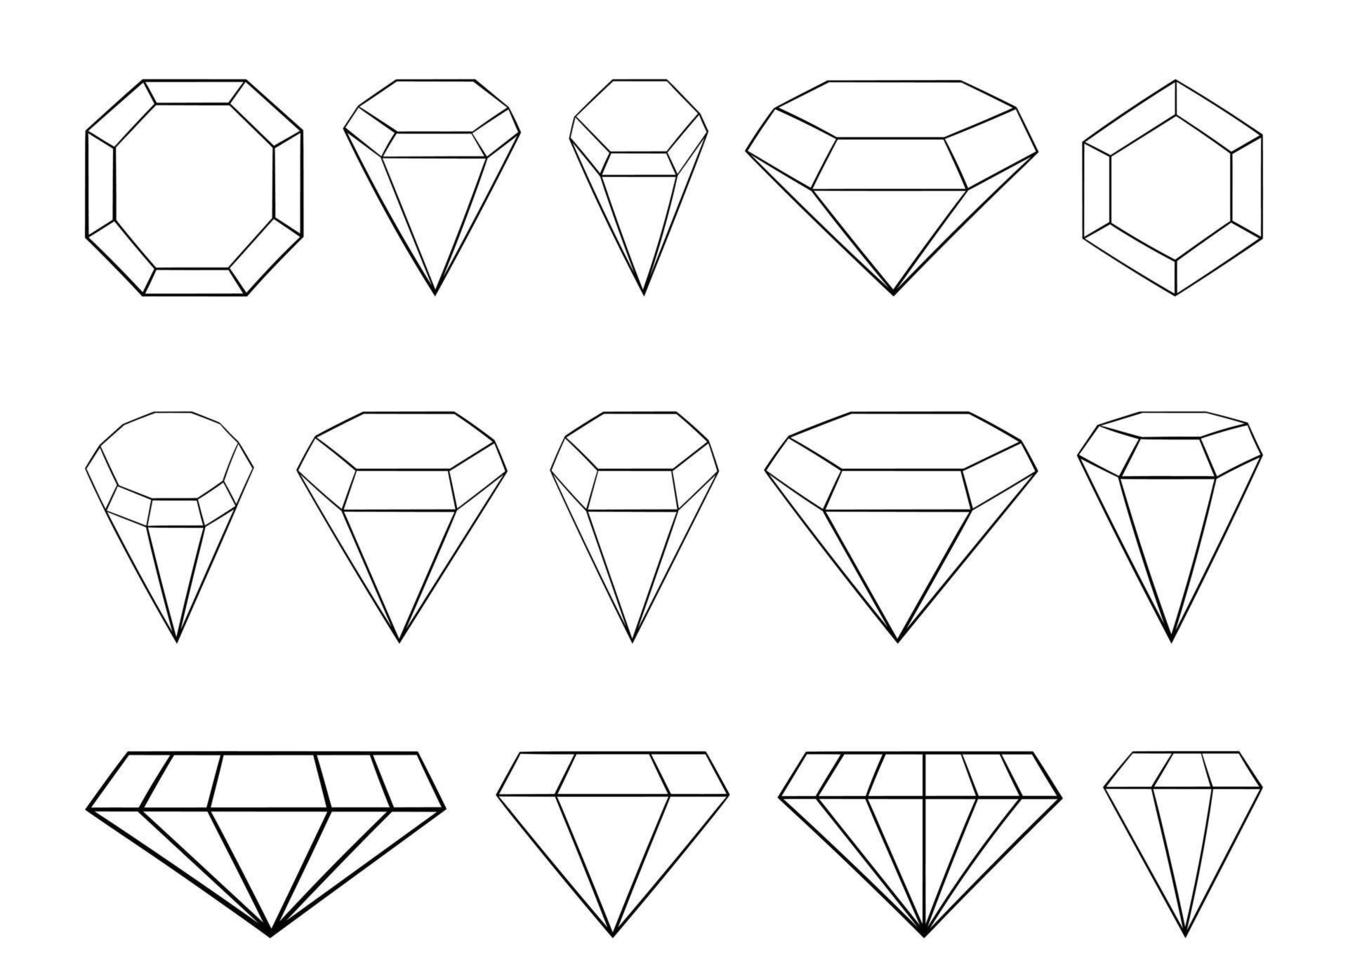 diamant set vector ontwerp illustratie geïsoleerd op een witte achtergrond